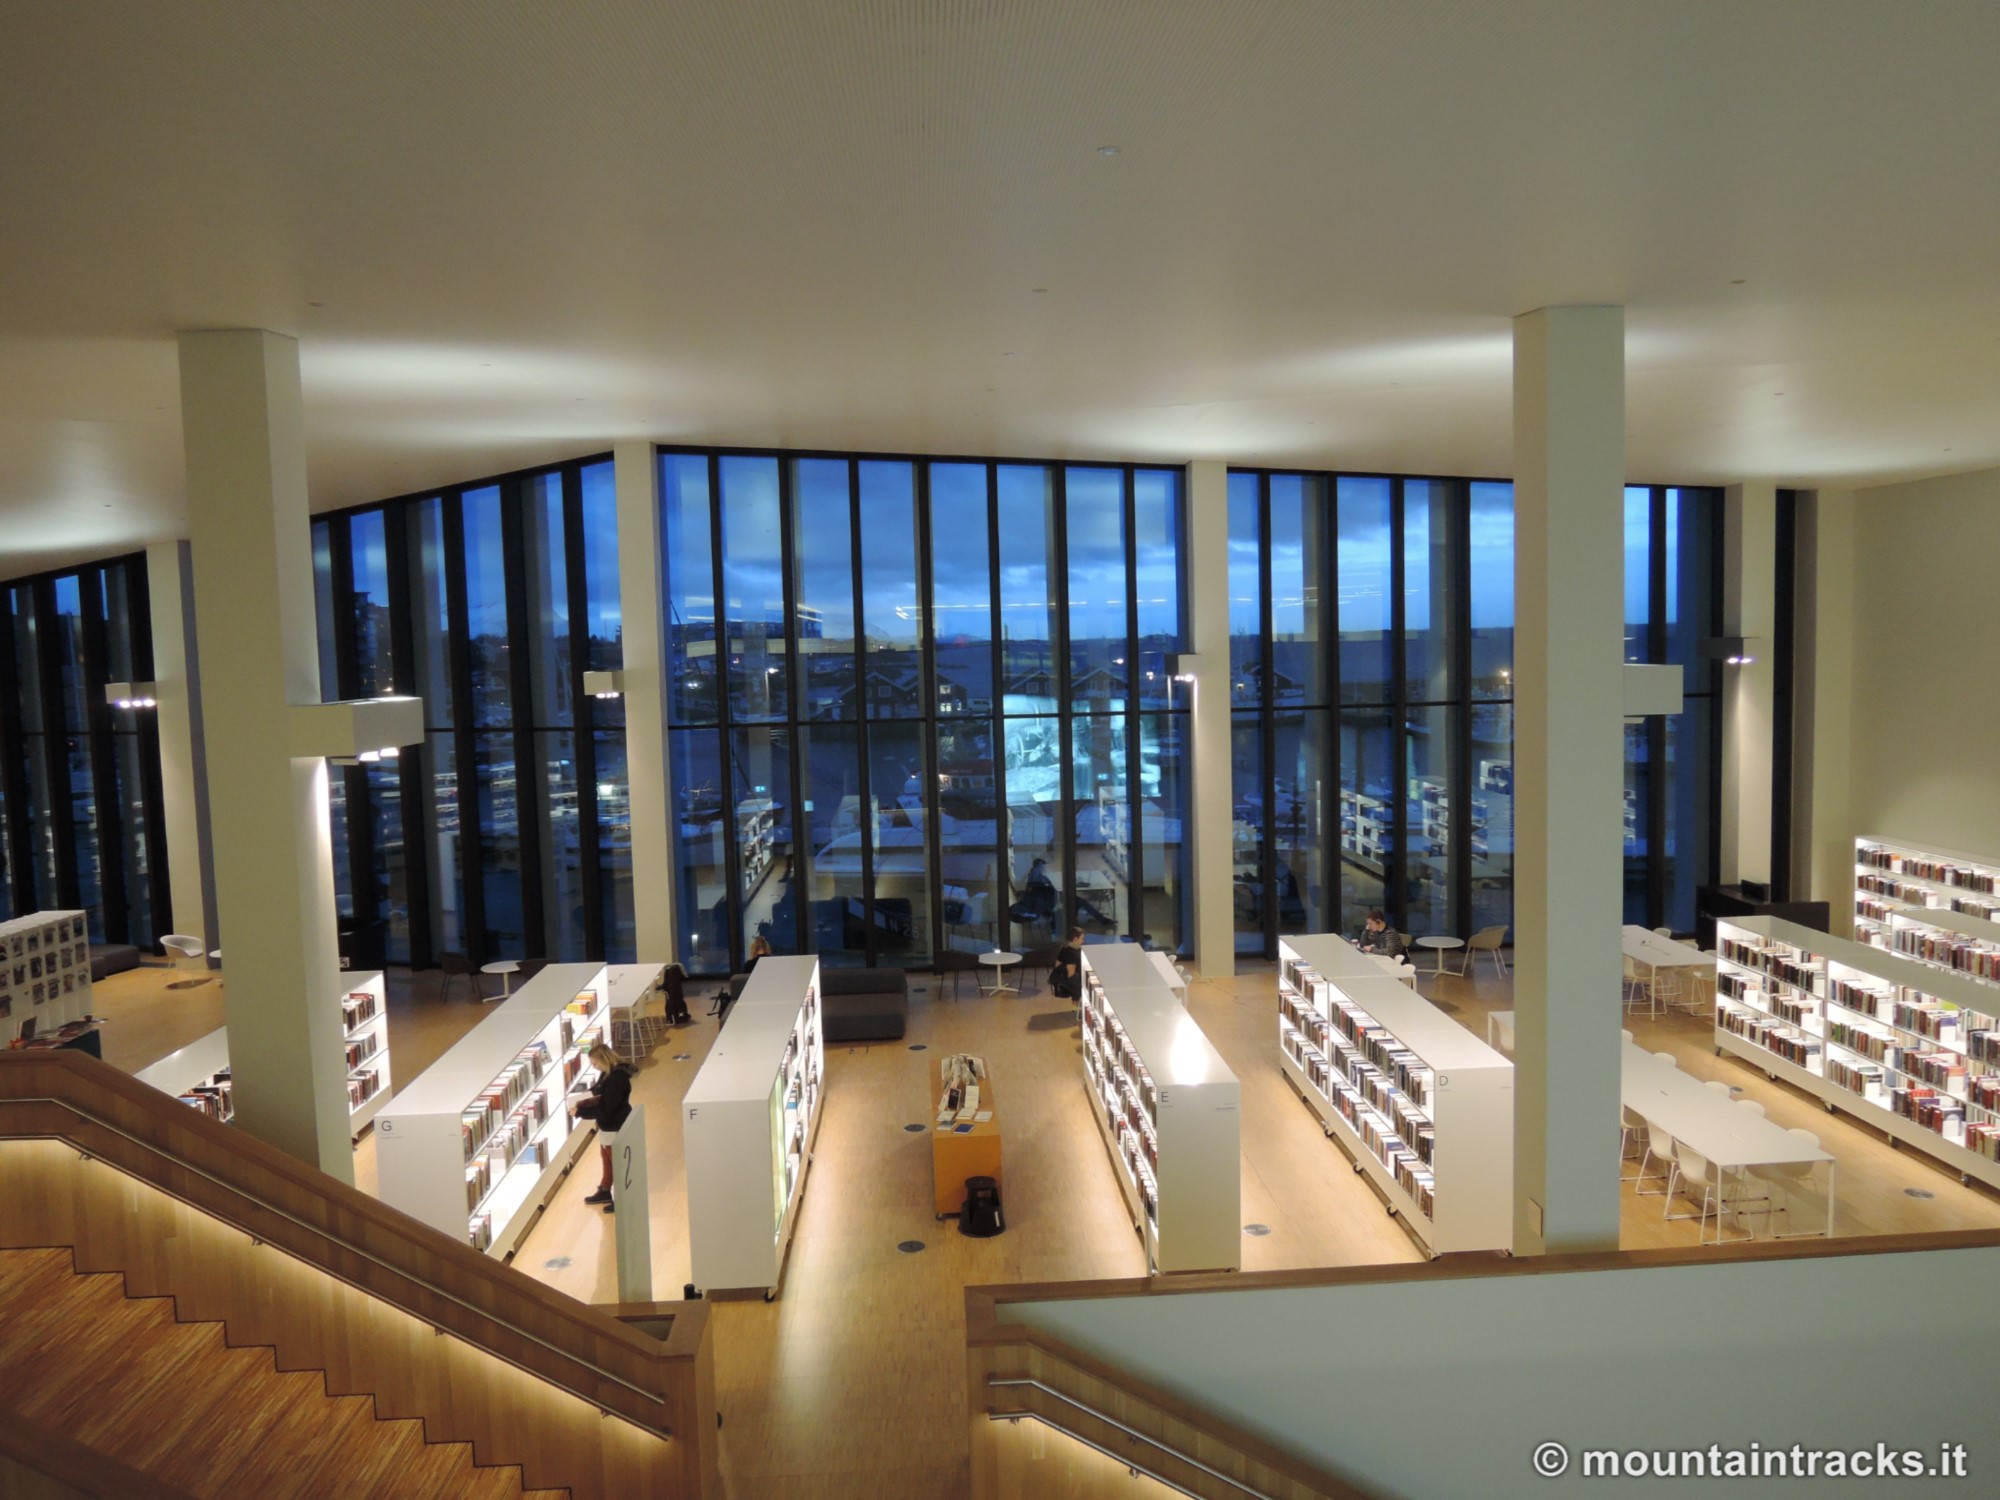 Bodø library